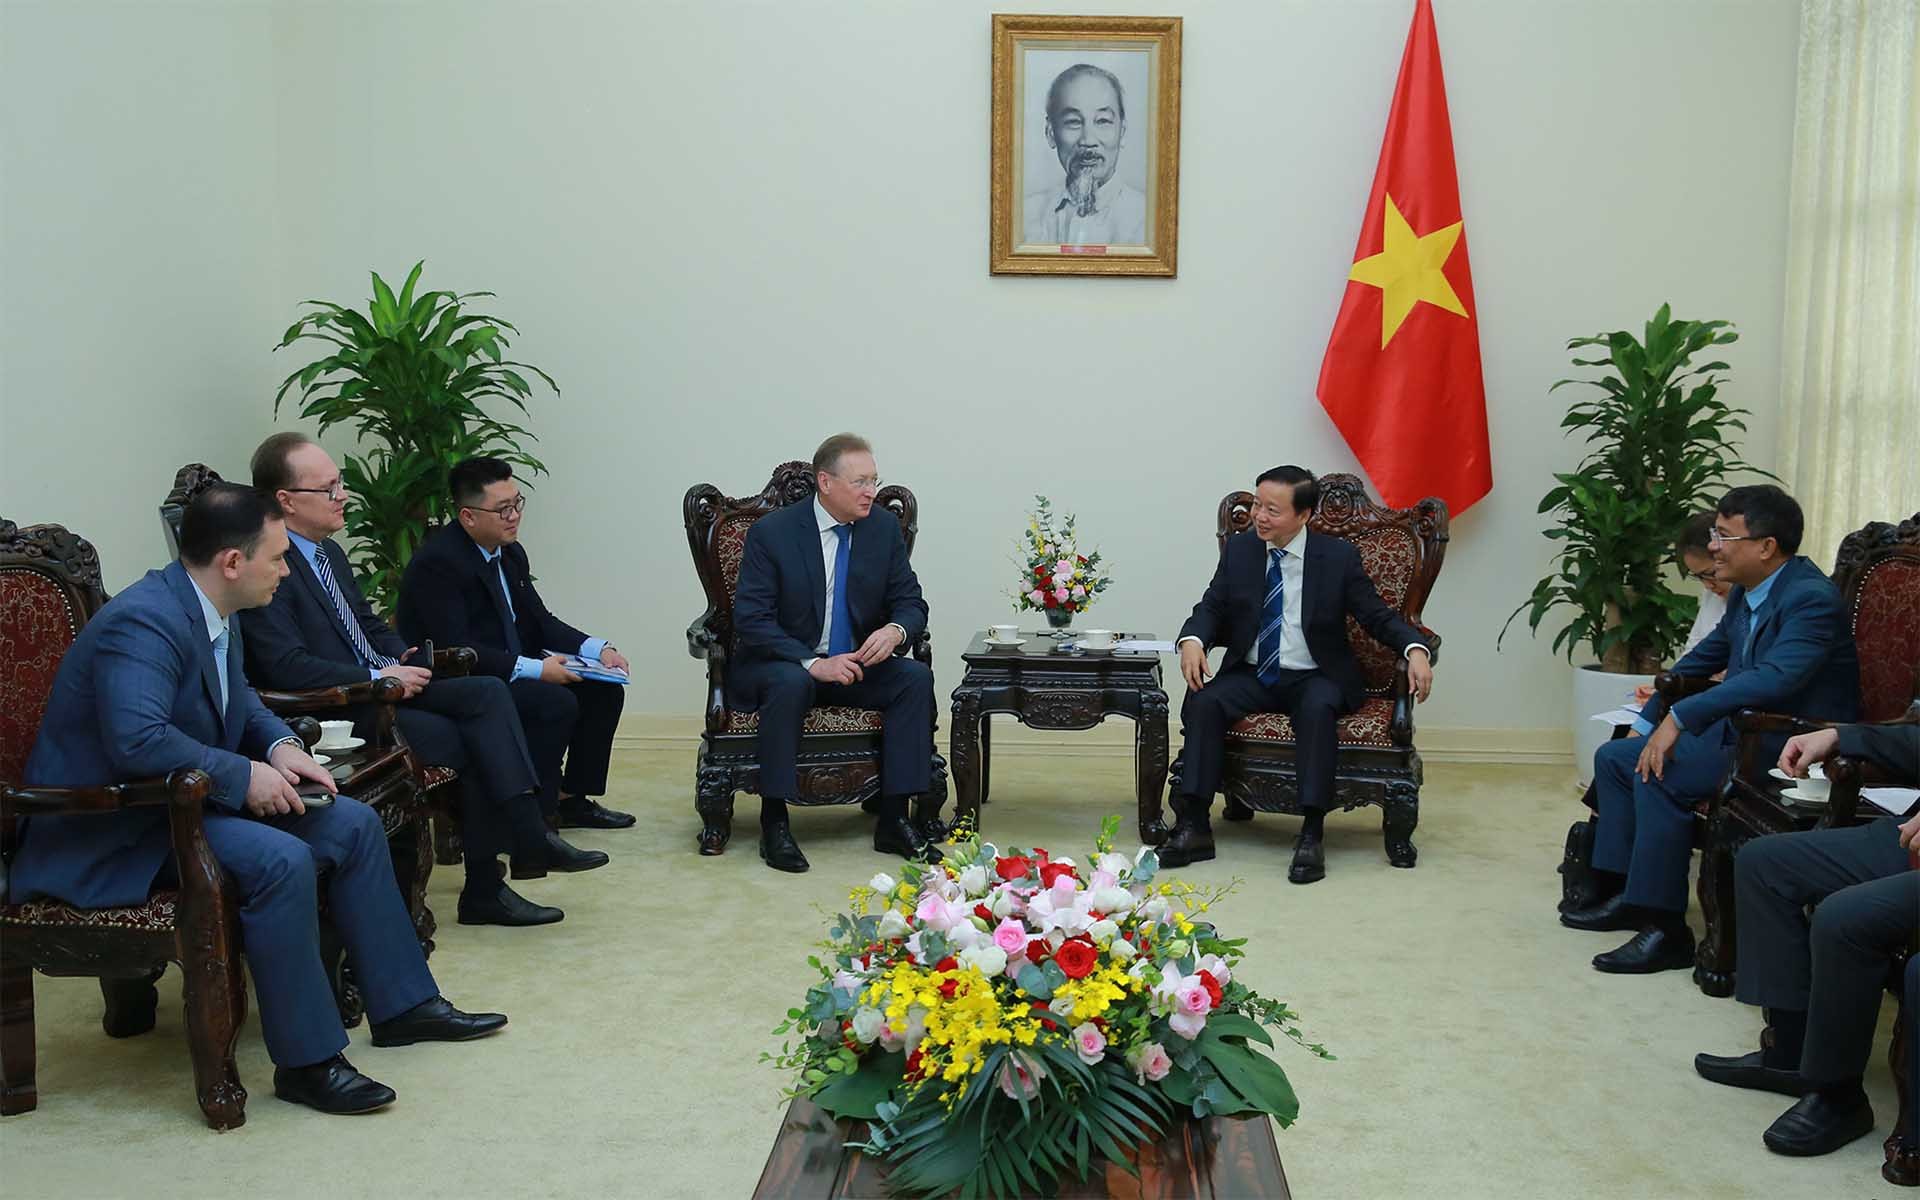 Hợp tác giữa Zarubezhneft và PVN góp phần quan trọng vào quan hệ kinh tế Việt Nam-Nga